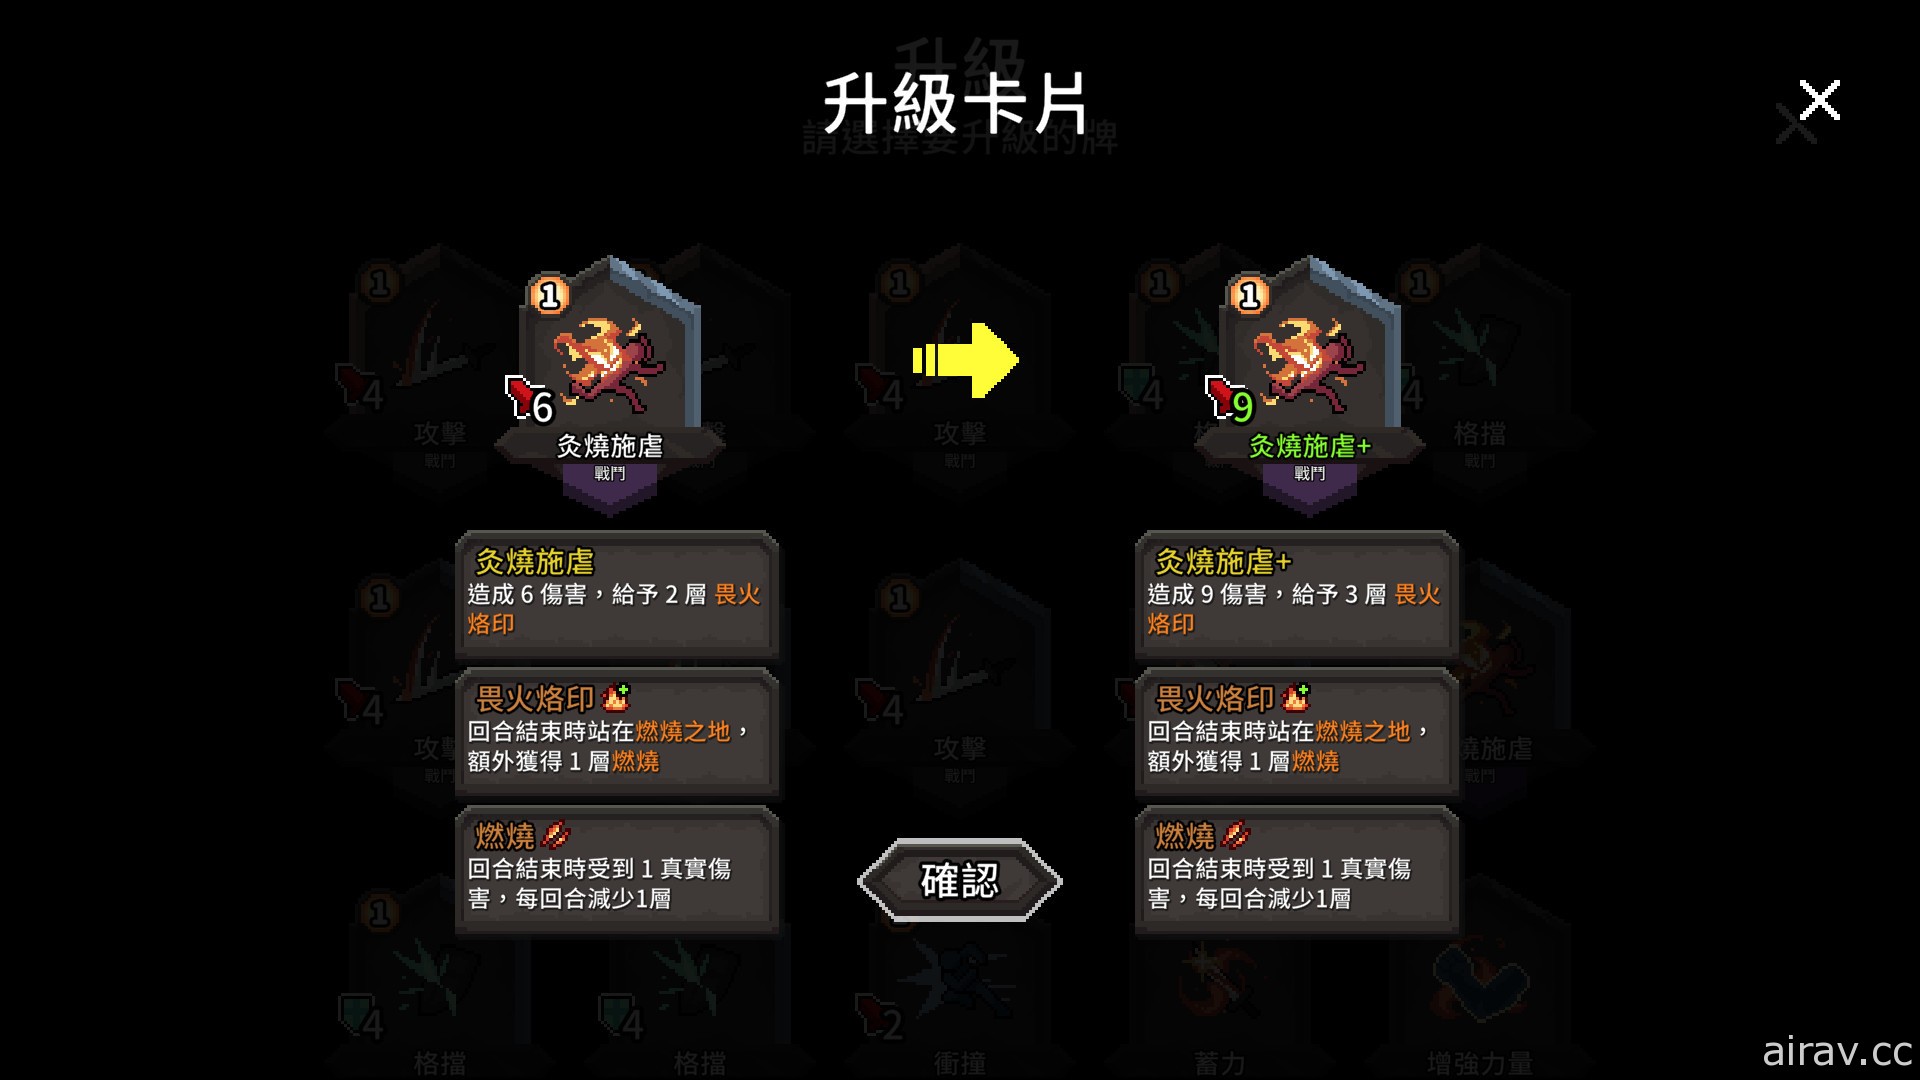 台湾团队新作《斗技场的阿利娜》公开游戏预告片 预告 10 月开放试玩版